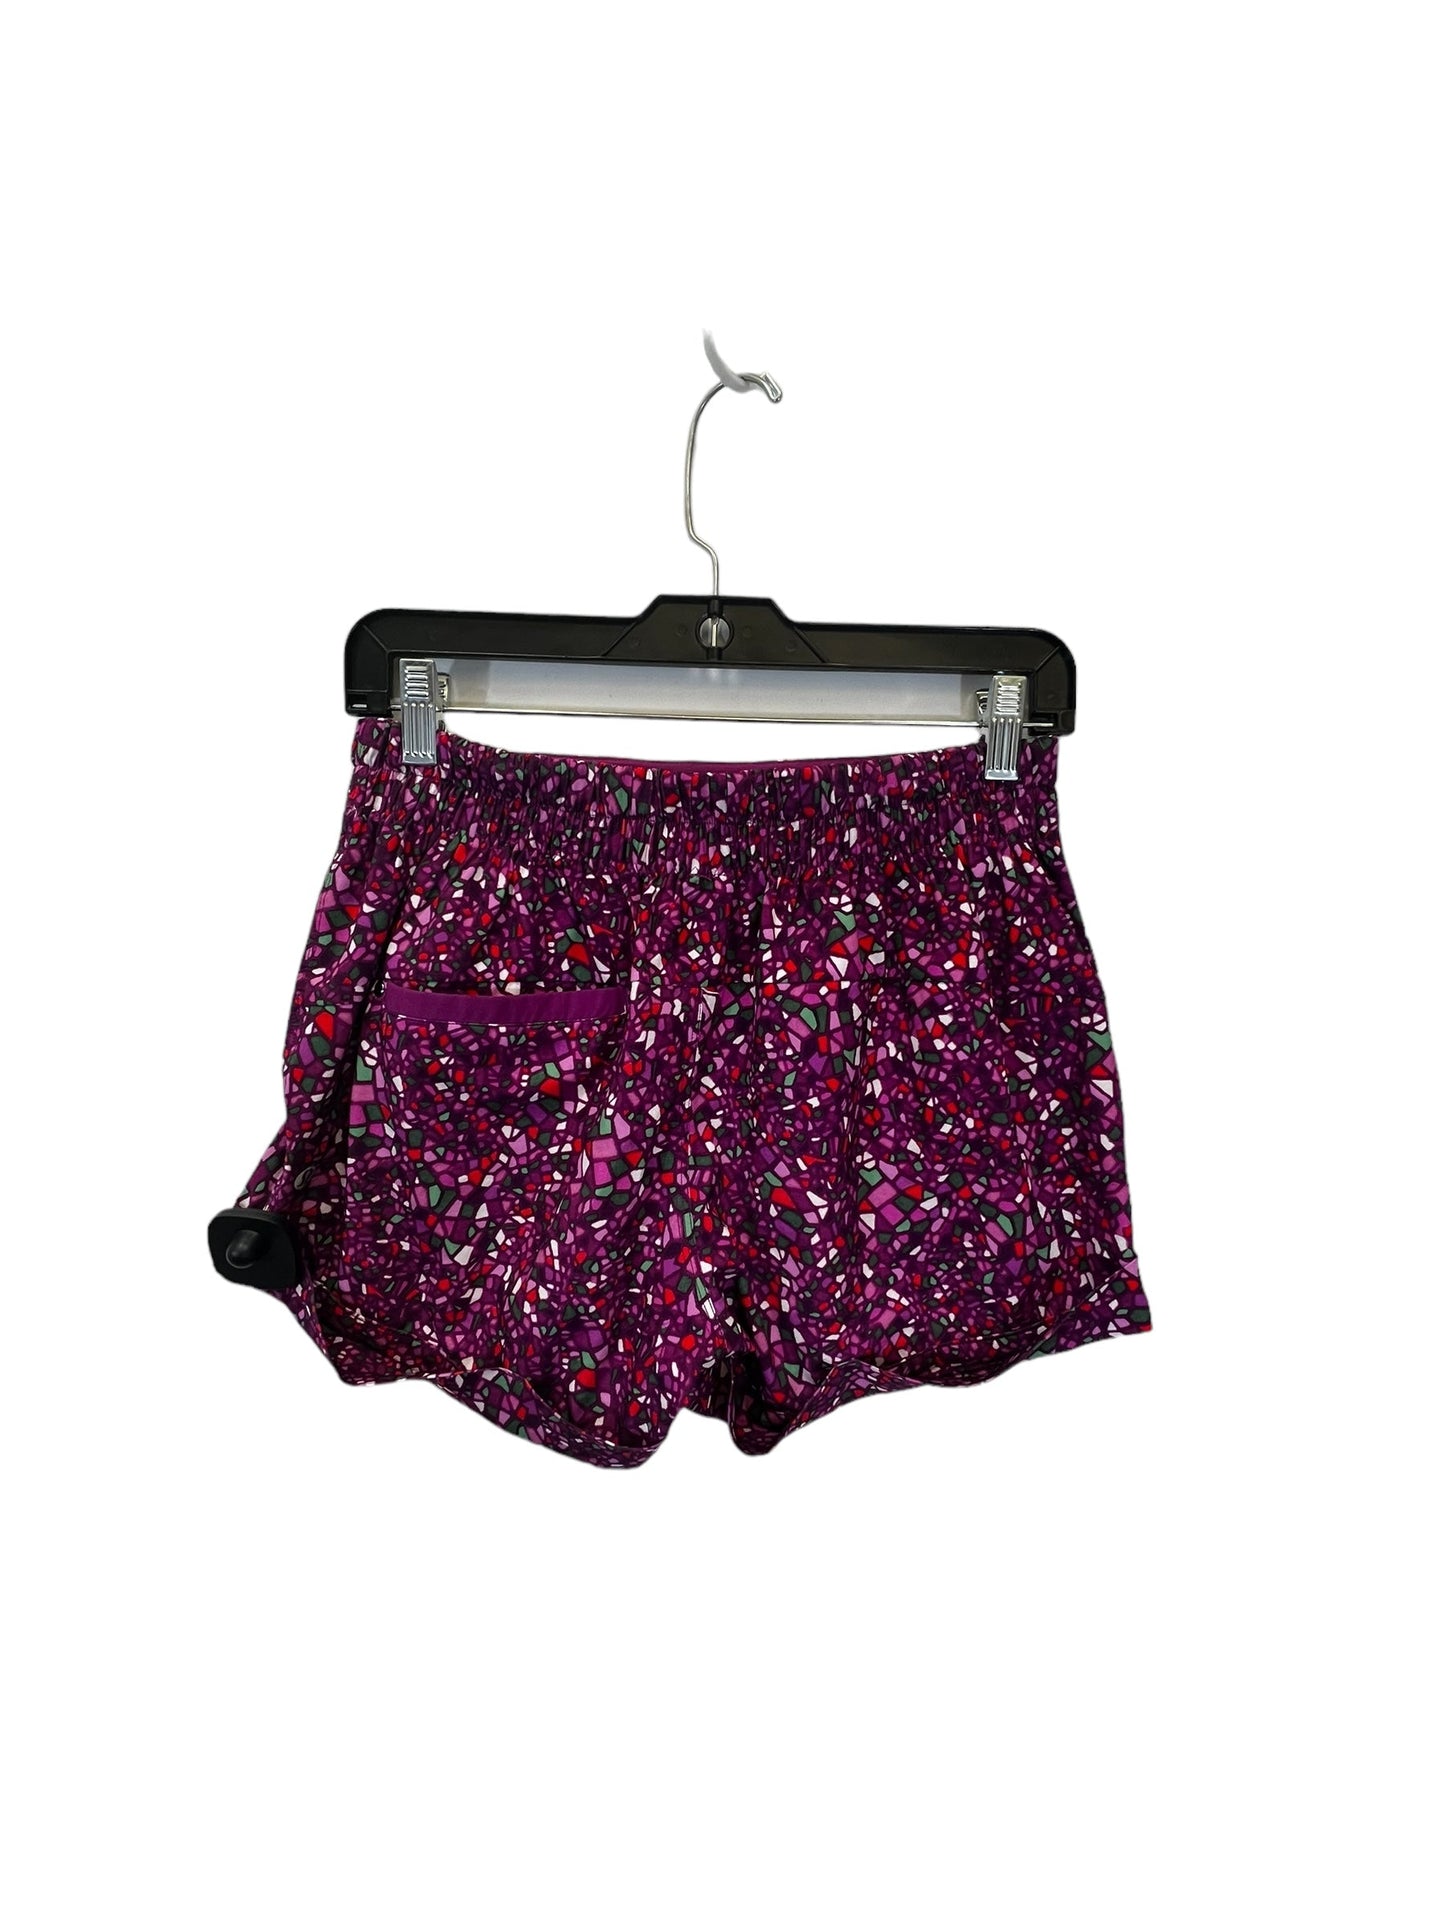 Purple Athletic Shorts Lululemon, Size 6